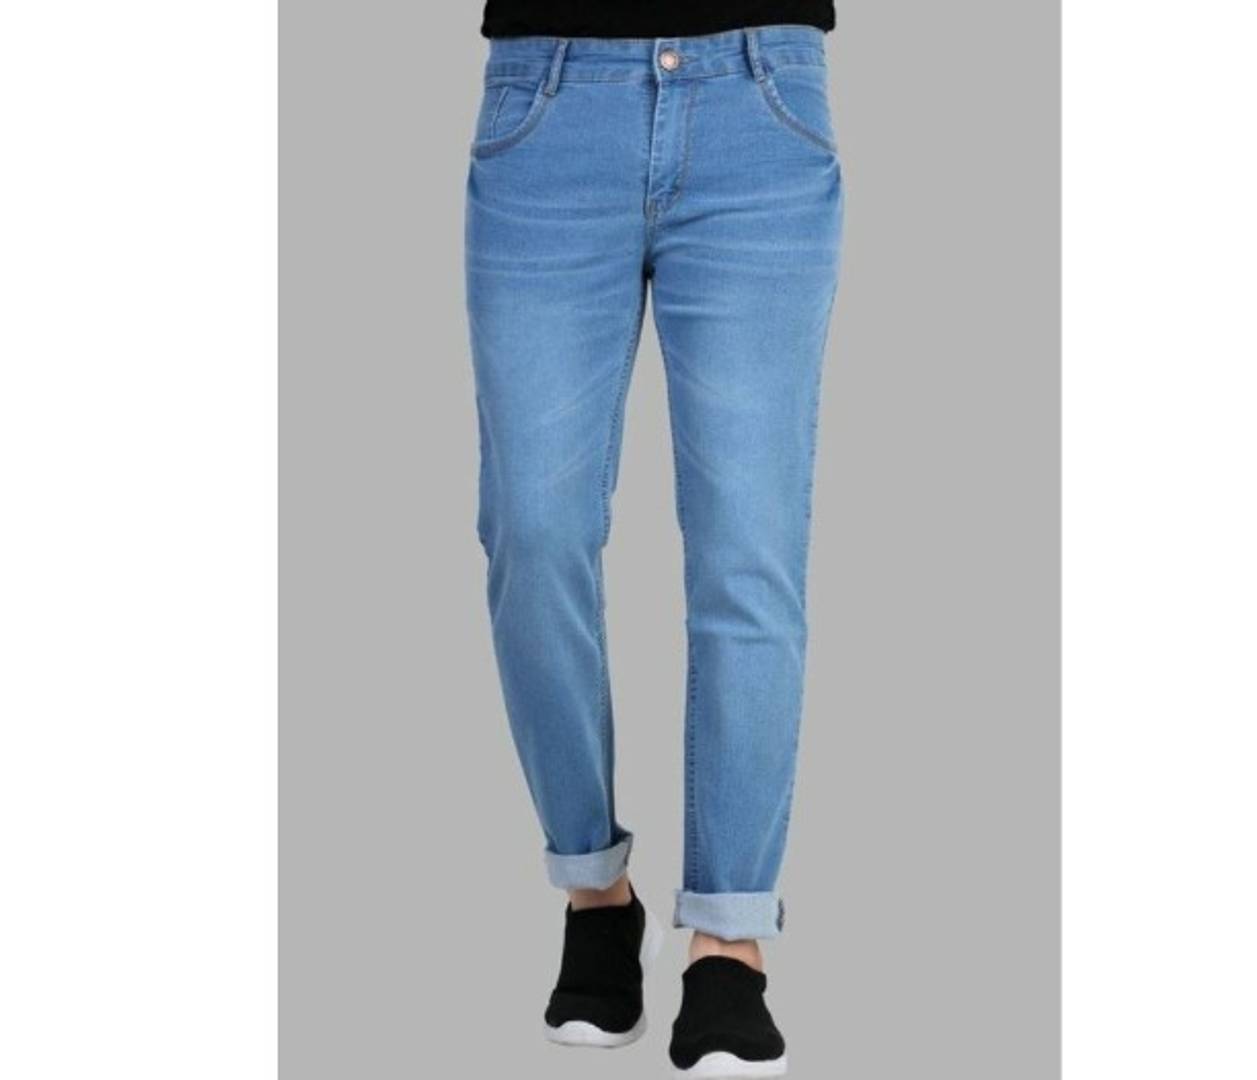 Elegant Denim Washed Jeans For Men And Boys